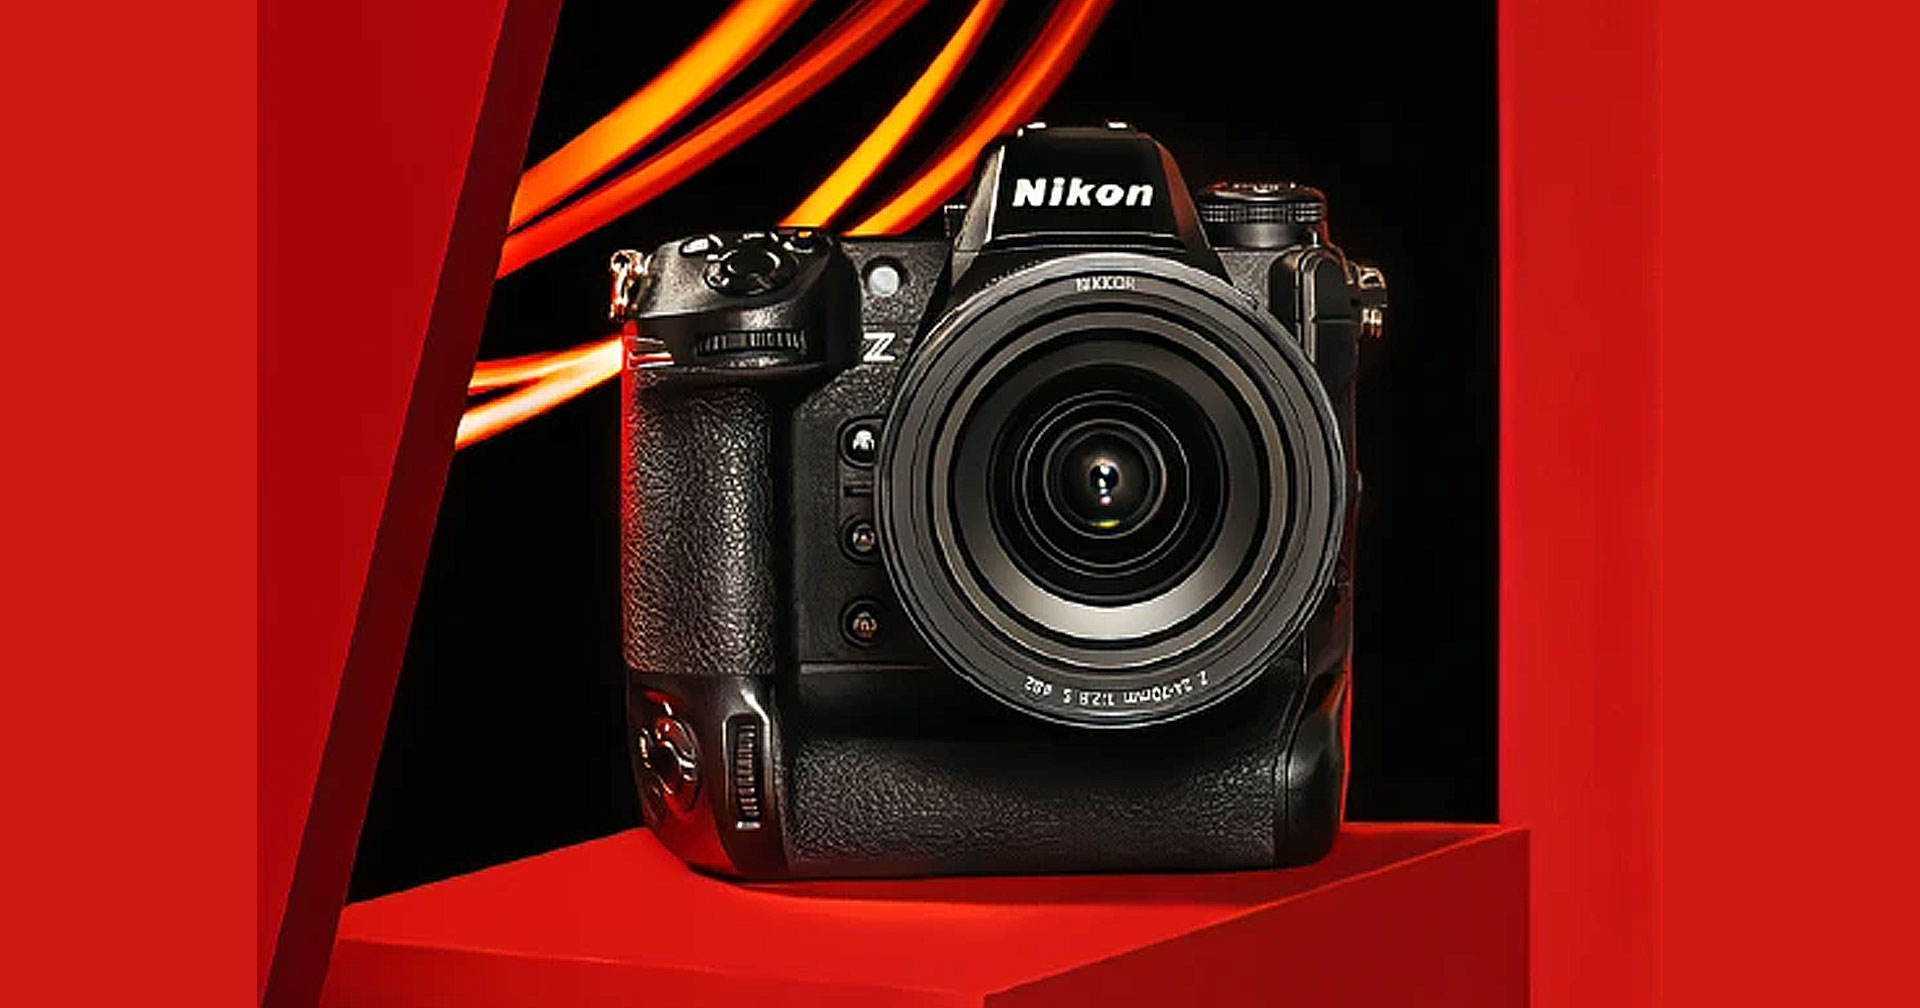 ฟีเจอร์เปลี่ยนเสียงชัตเตอร์ Nikon Z9 กำลังเตรียมออกให้อัปเดตกันแล้ว เร็ว ๆ นี้